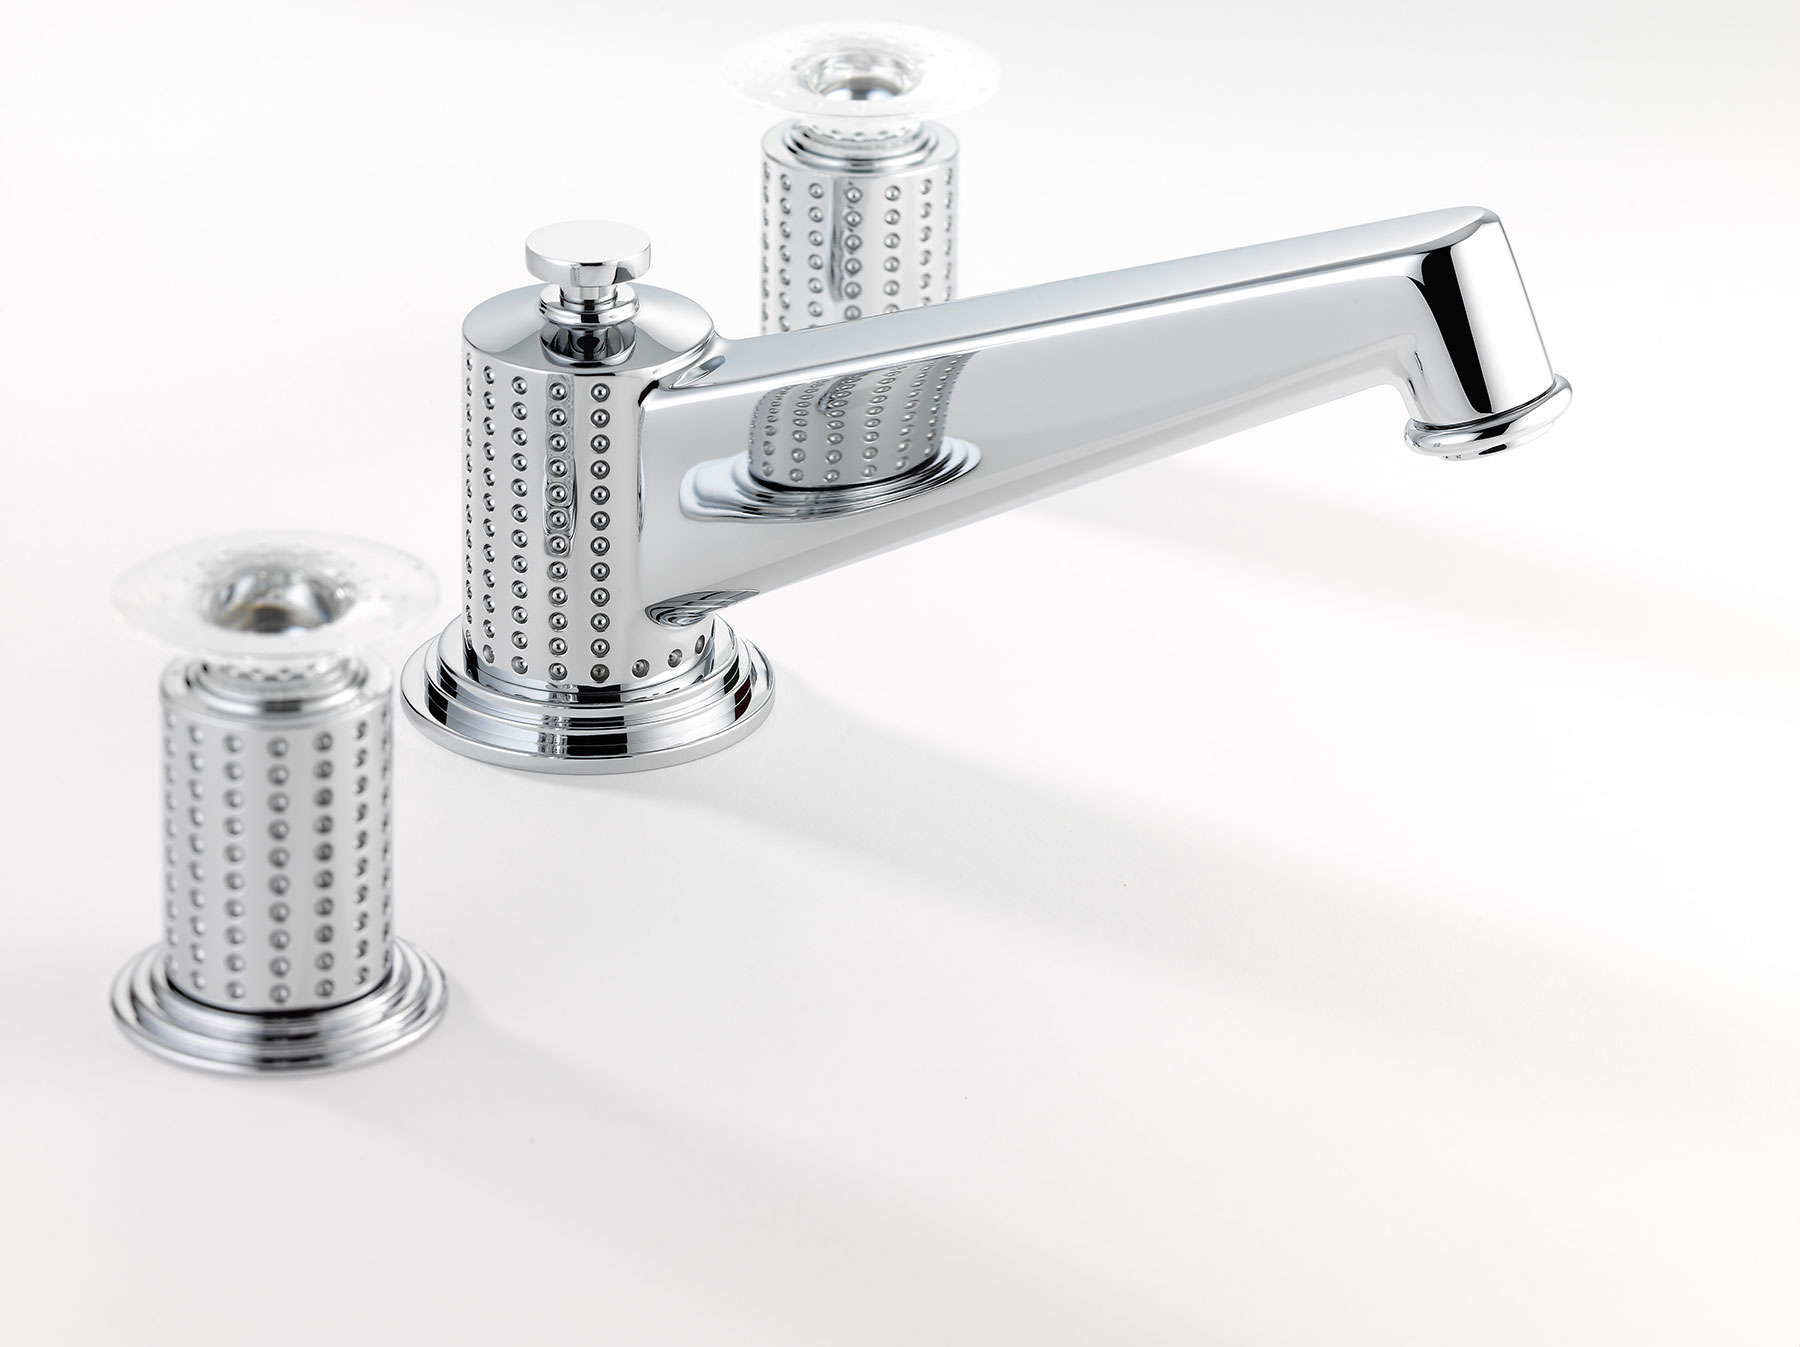 Modern Perle Deck Mount Faucet